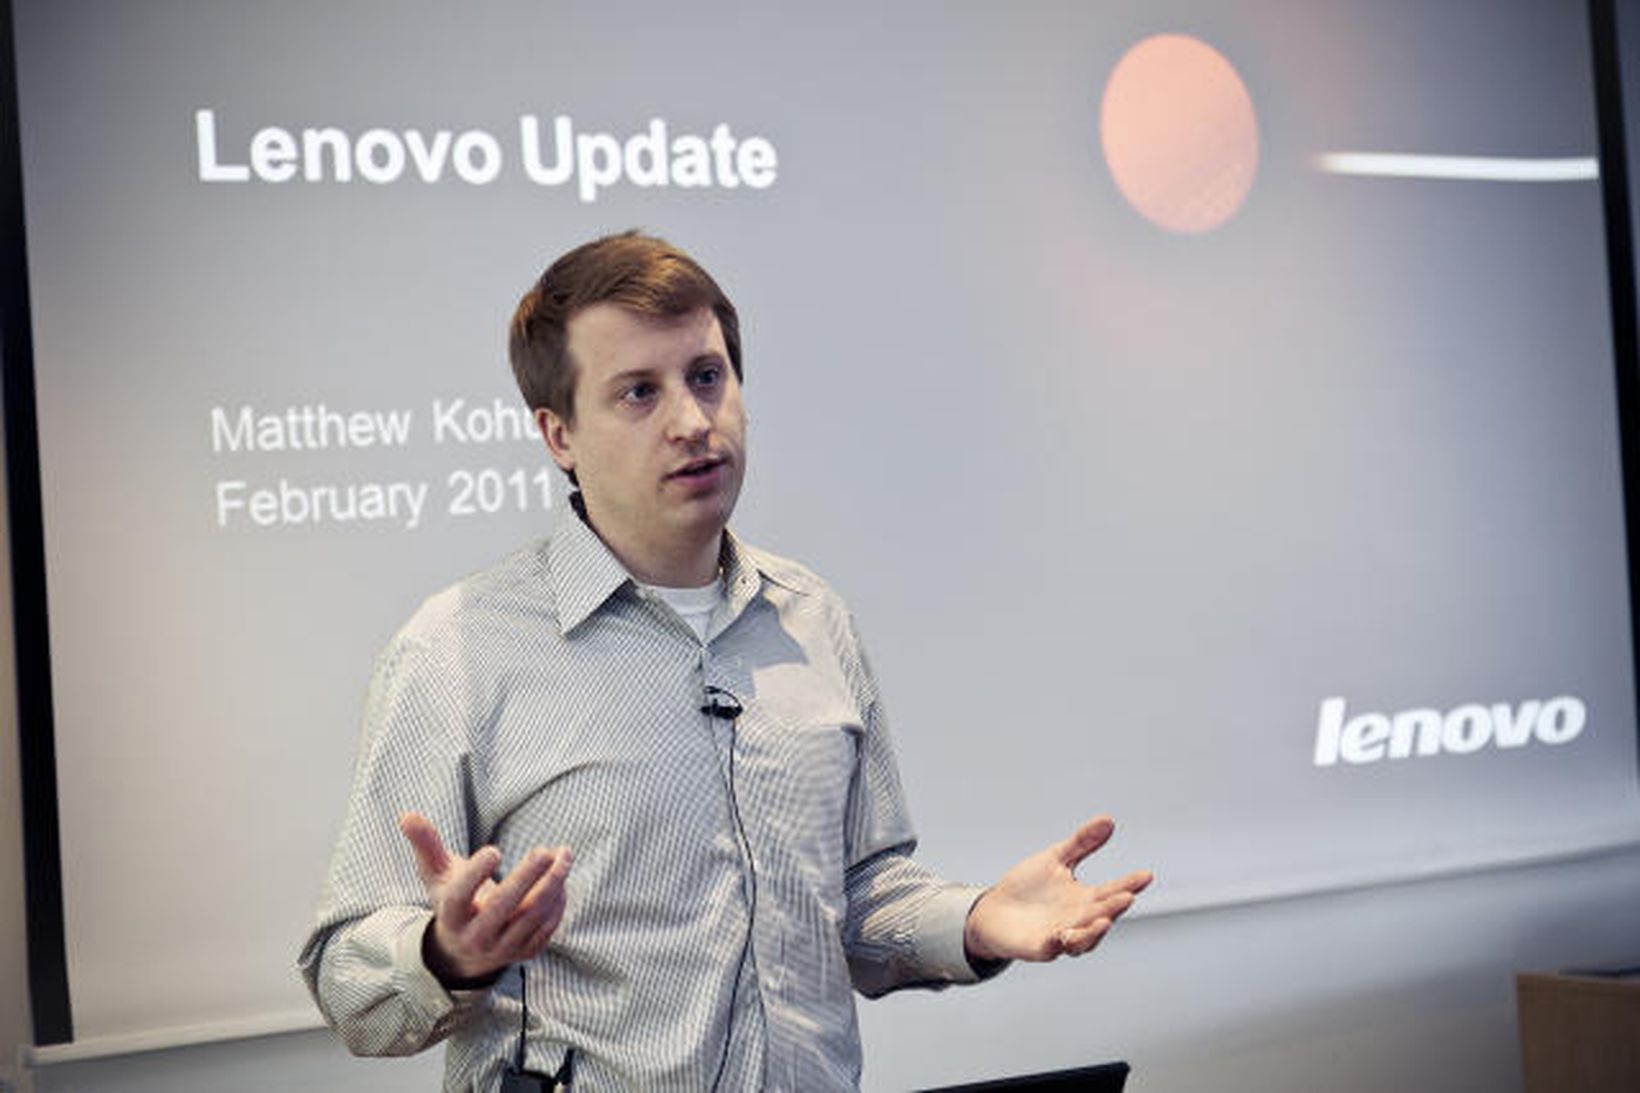 Matthew Kohut starfar sem sérfræðingur hjá Lenovo.